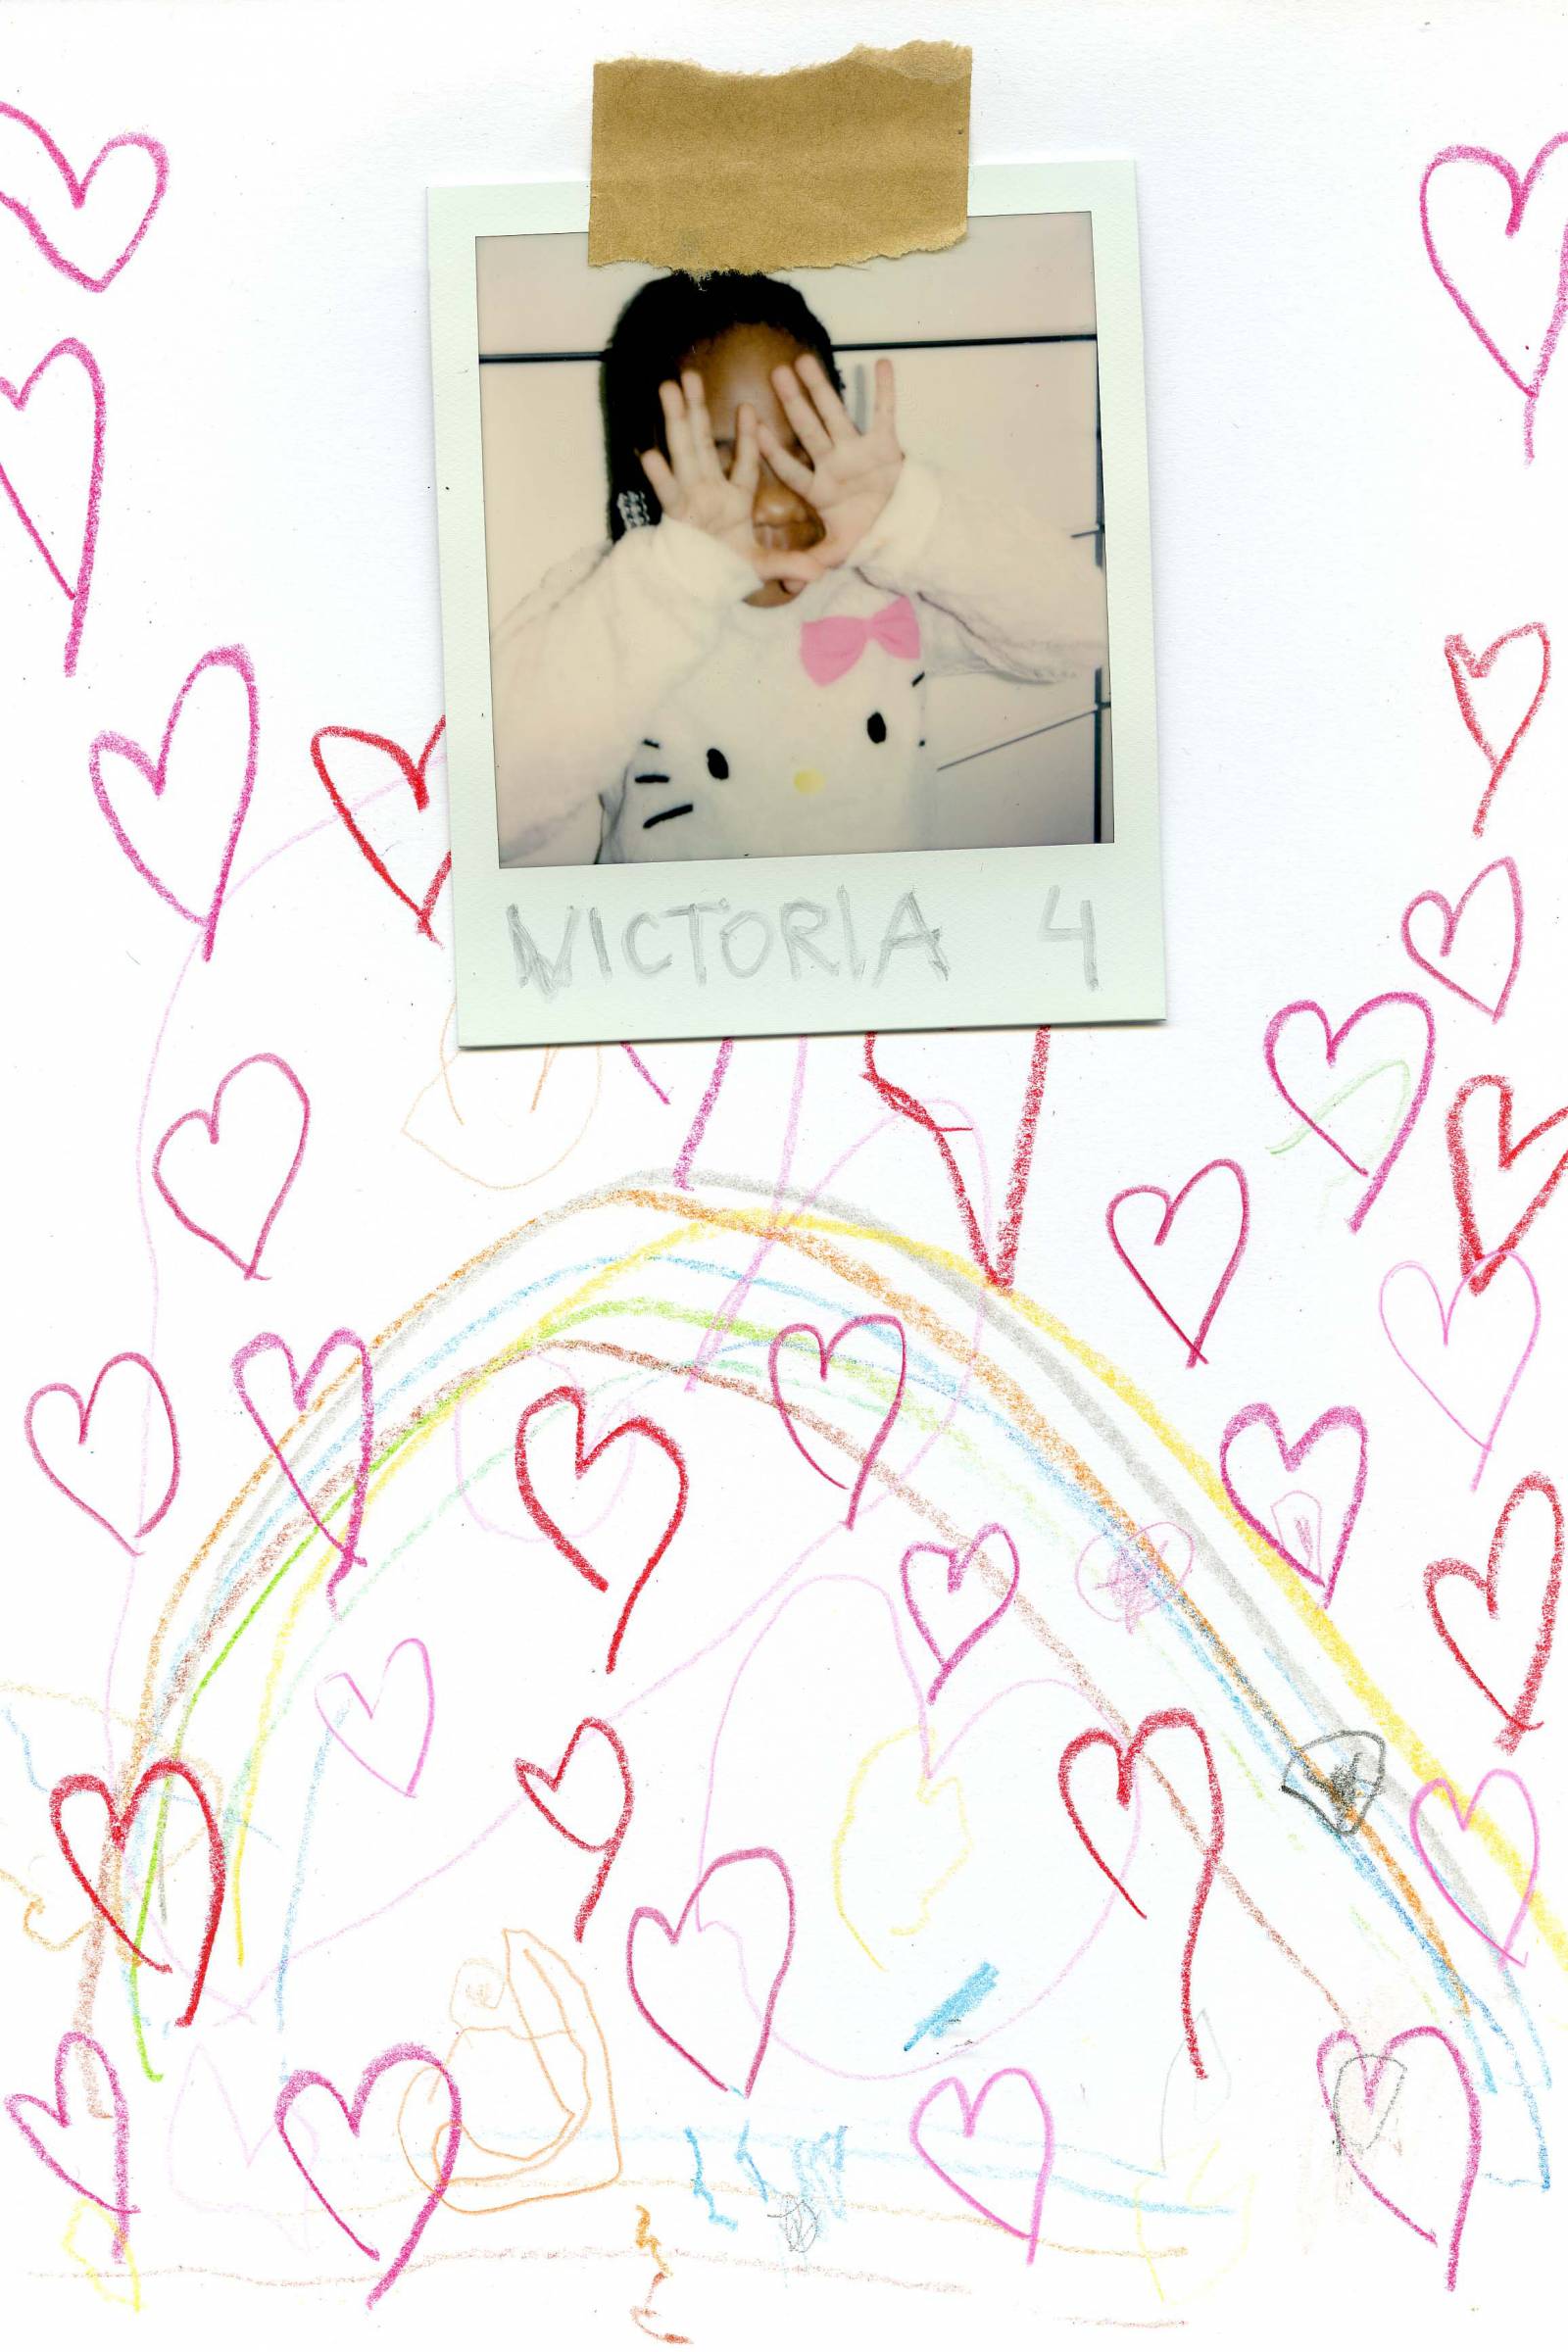 Victoria, 4 ,,Chcę miłości.”